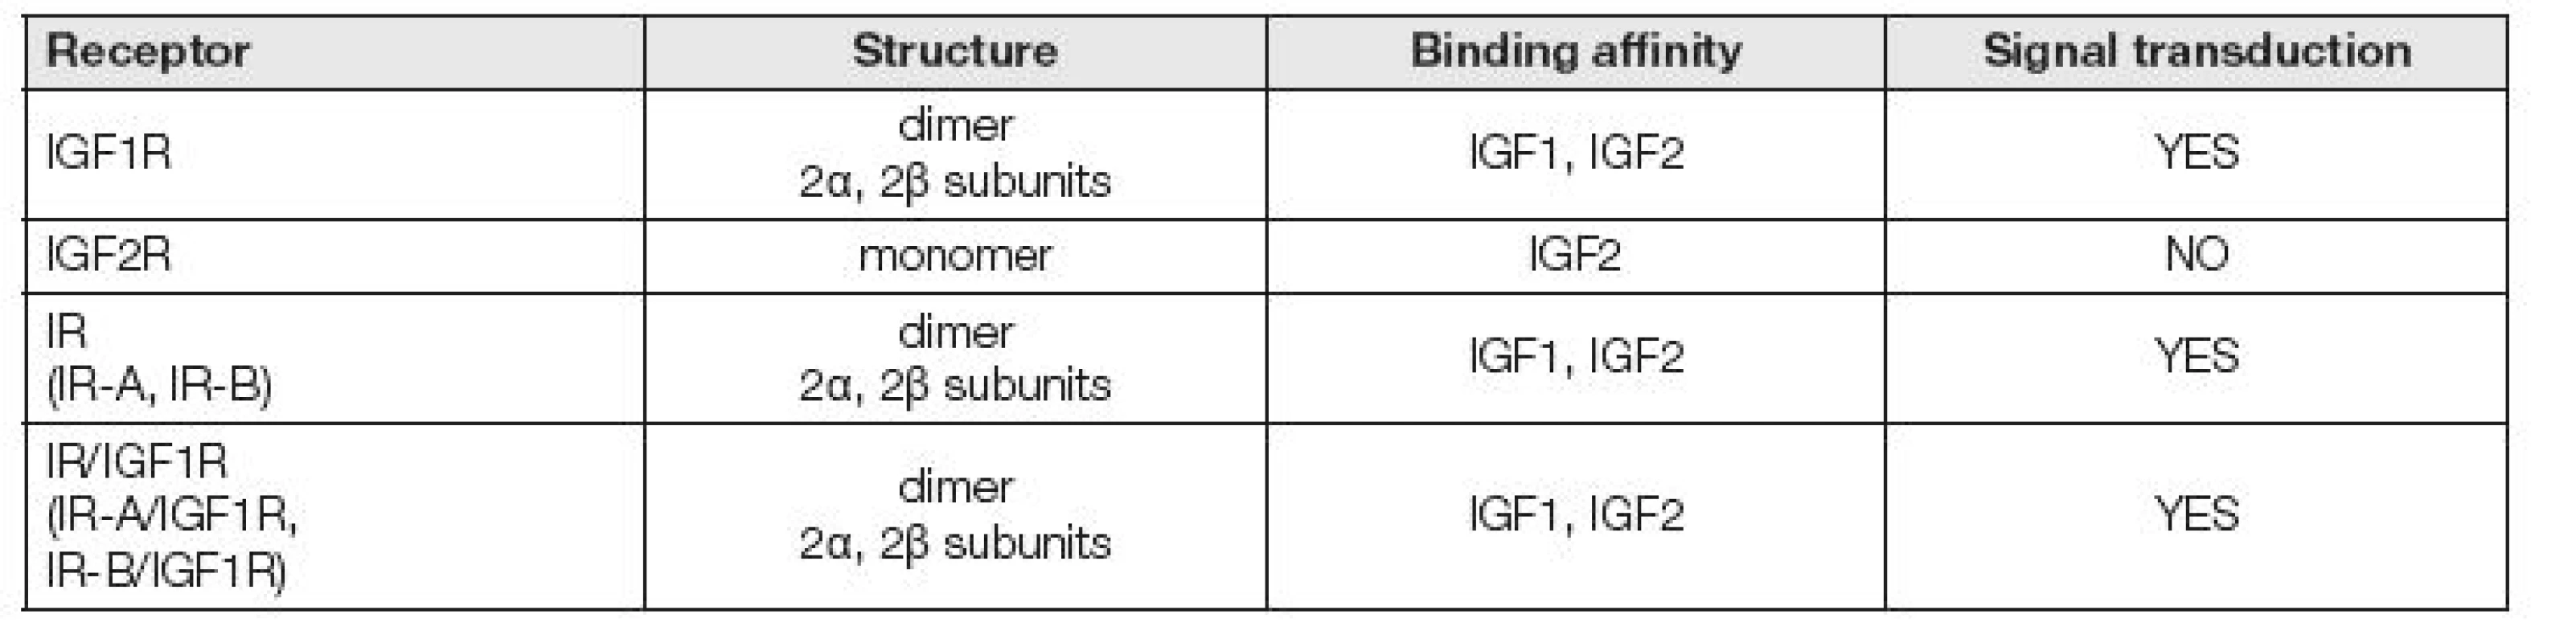 Receptors for IGFs